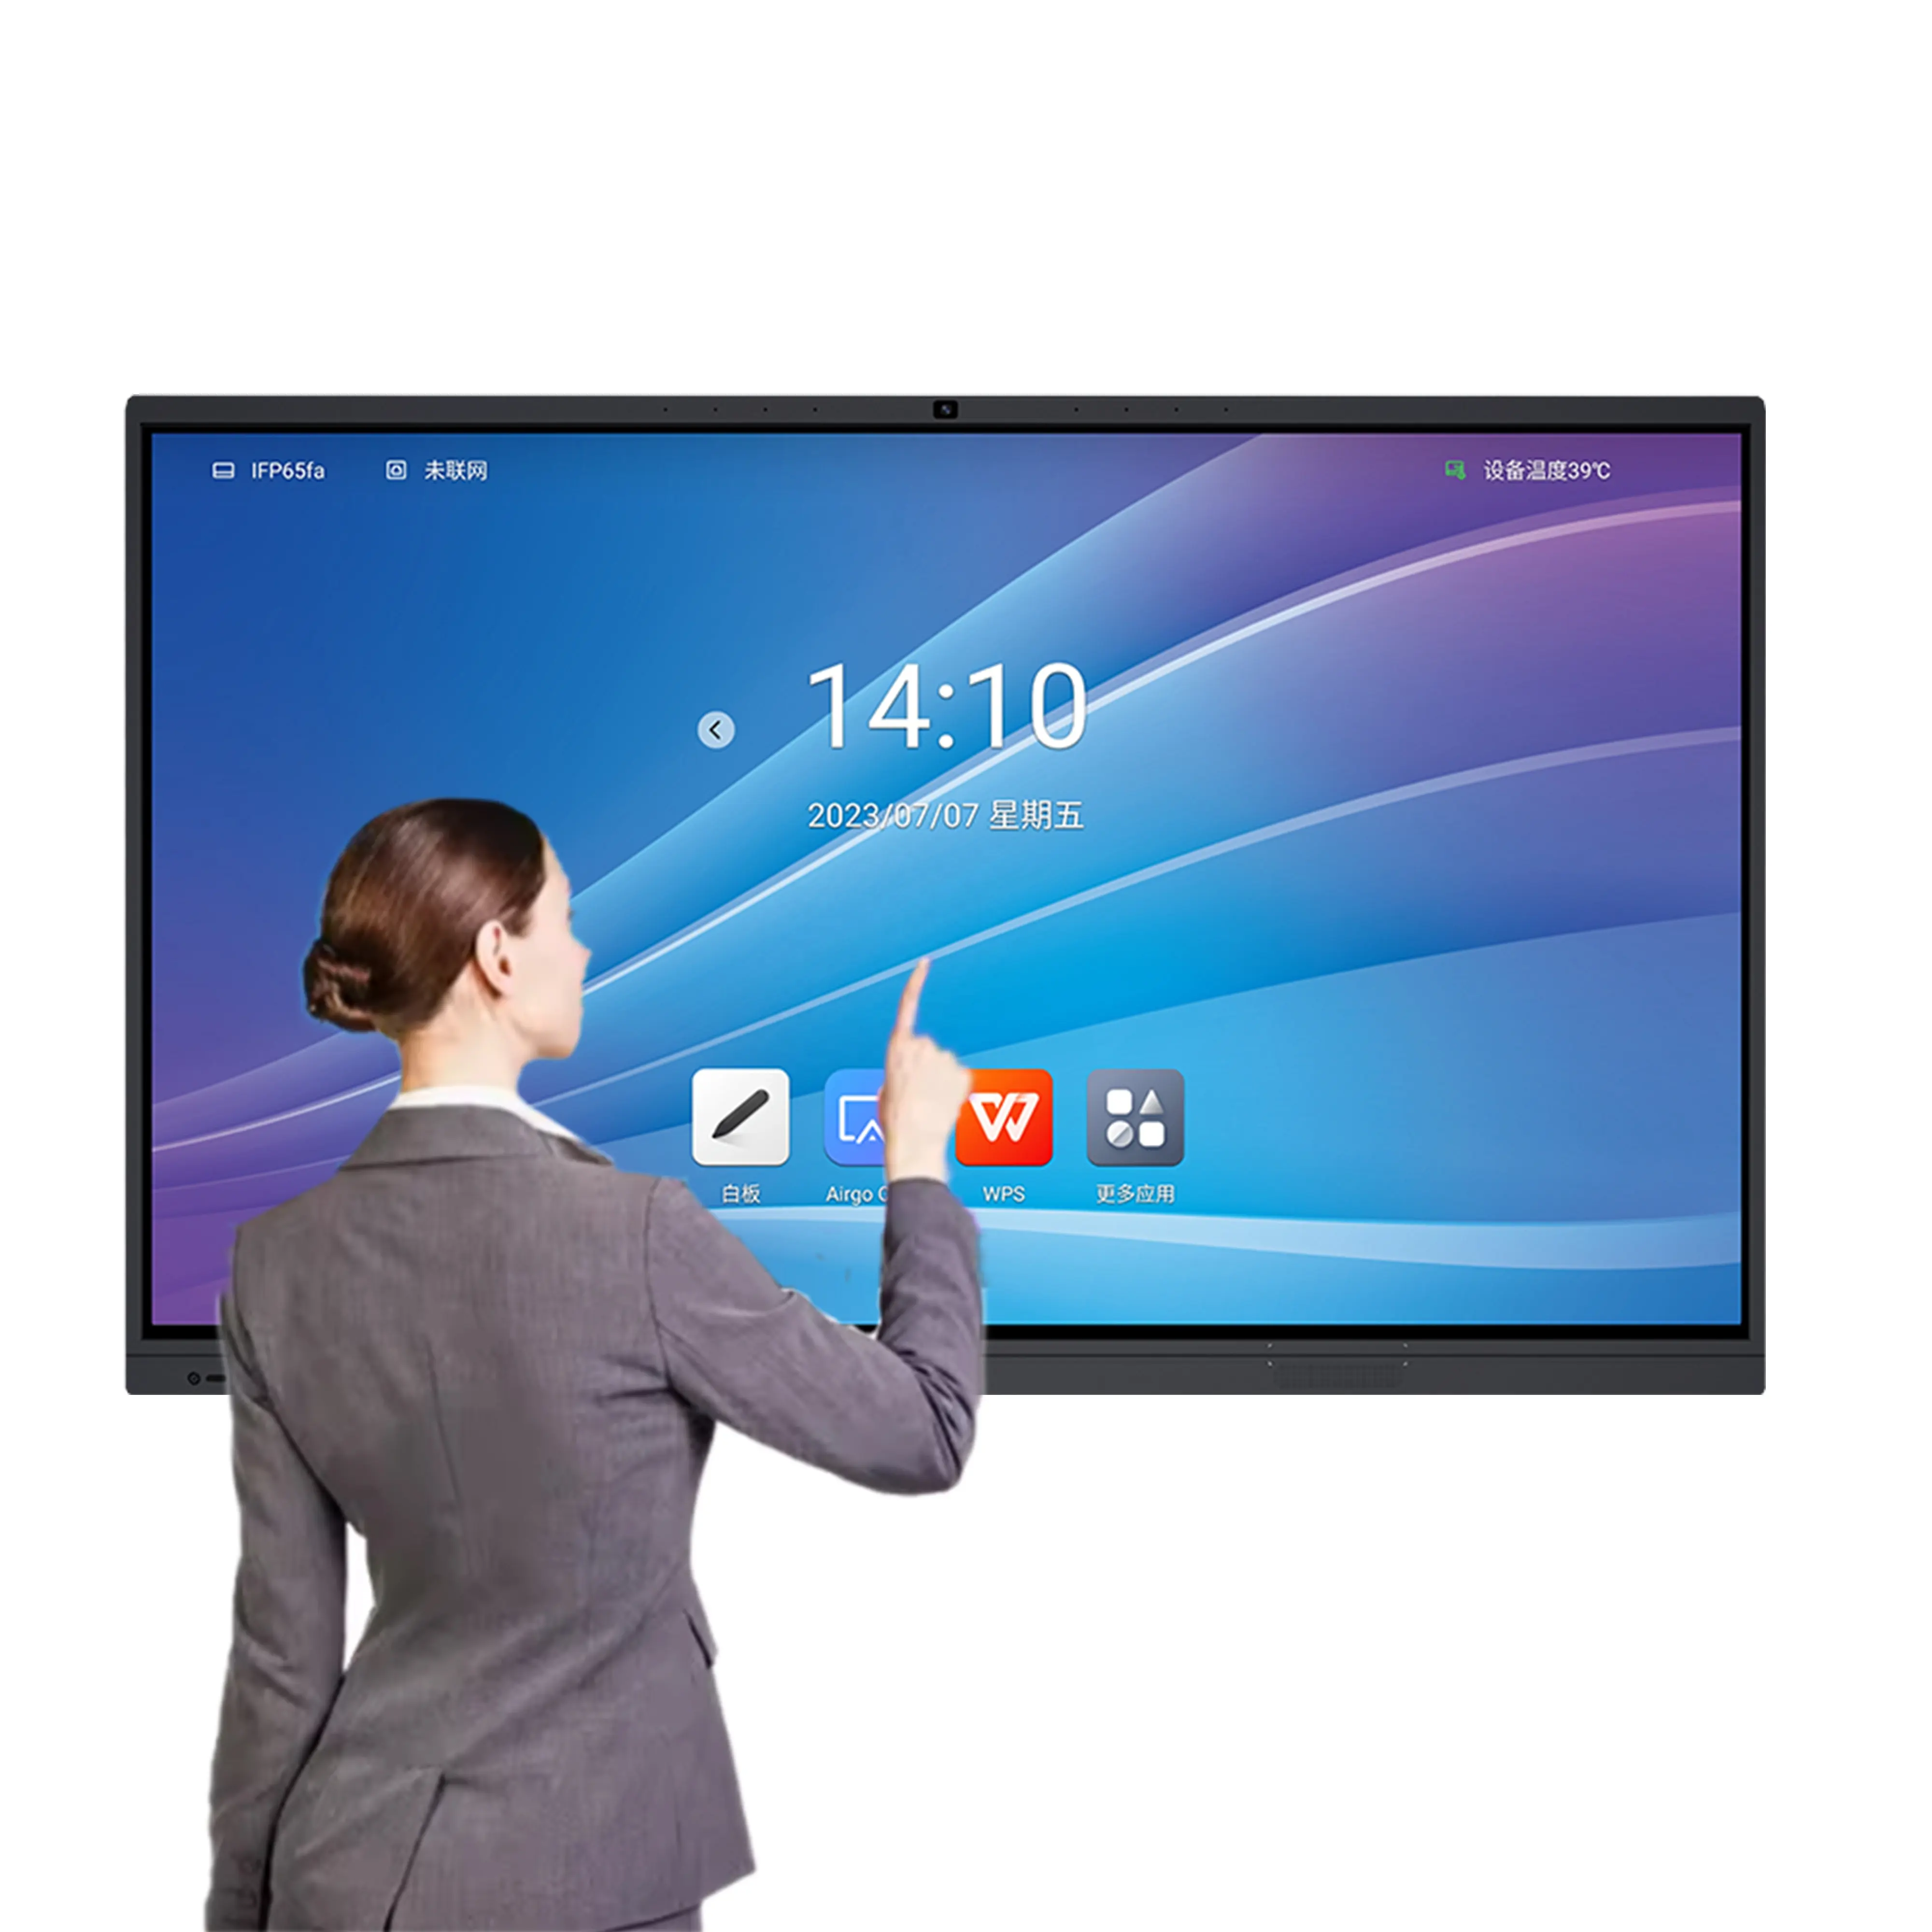 75 inch màn hình cảm ứng được xây dựng trong máy ảnh bức tường video LCD